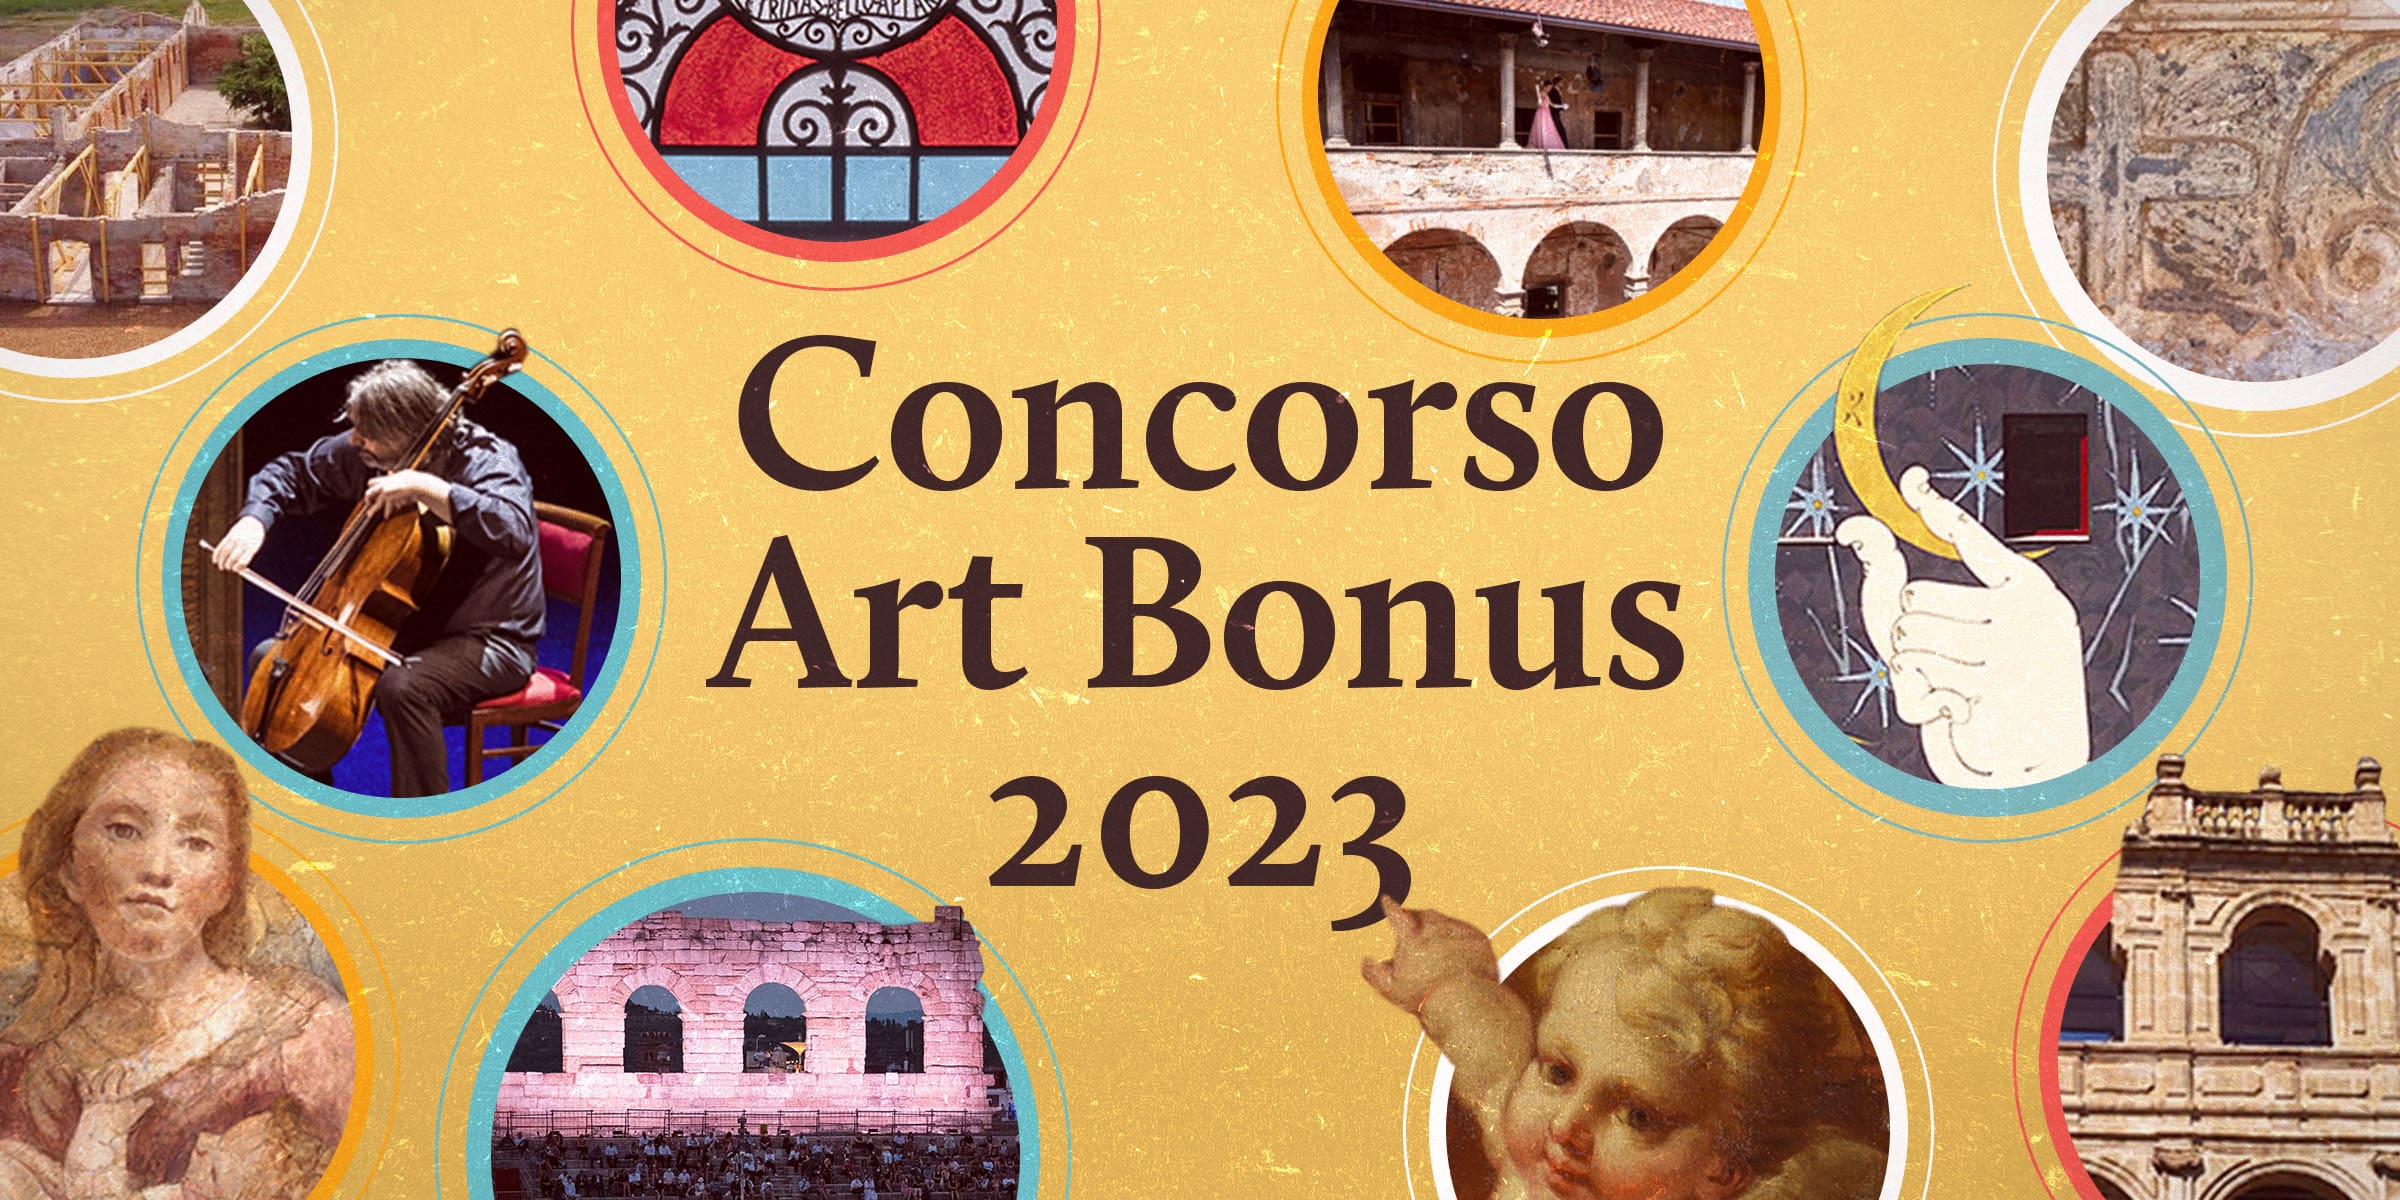 Art Bonus 2023